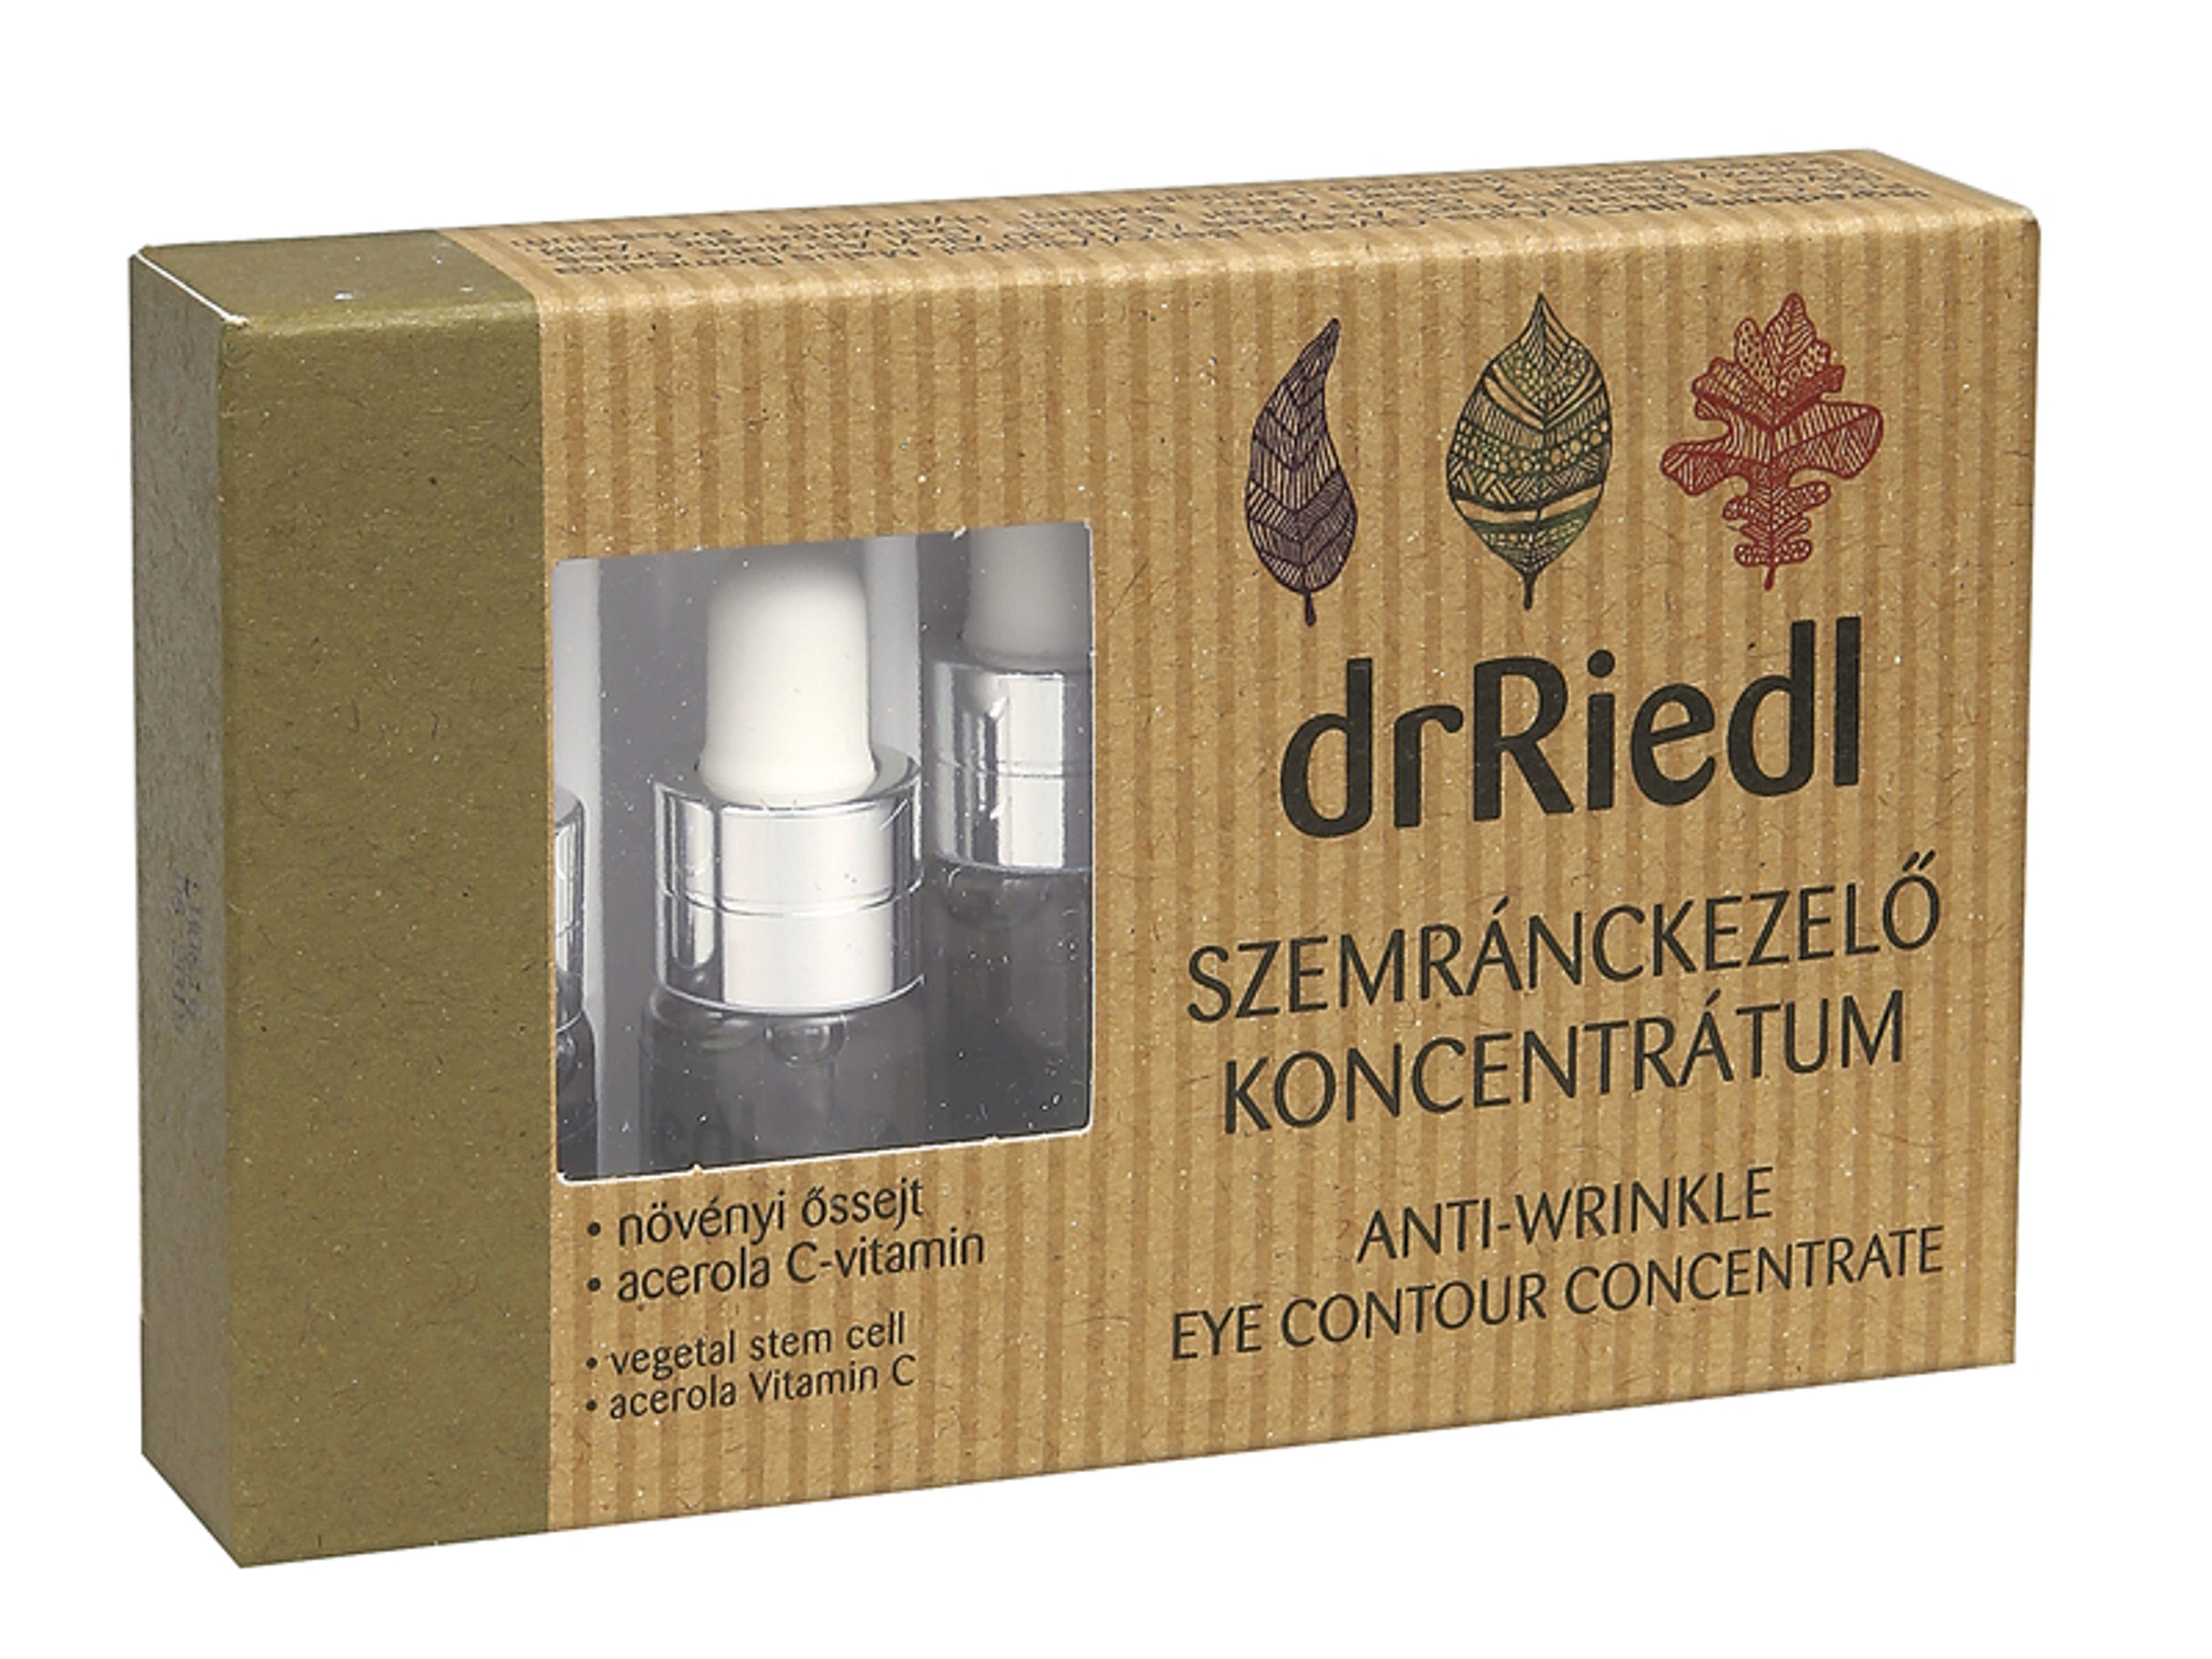 drRiedl szemránckrém koncentrátum 3x3 ml - 1db